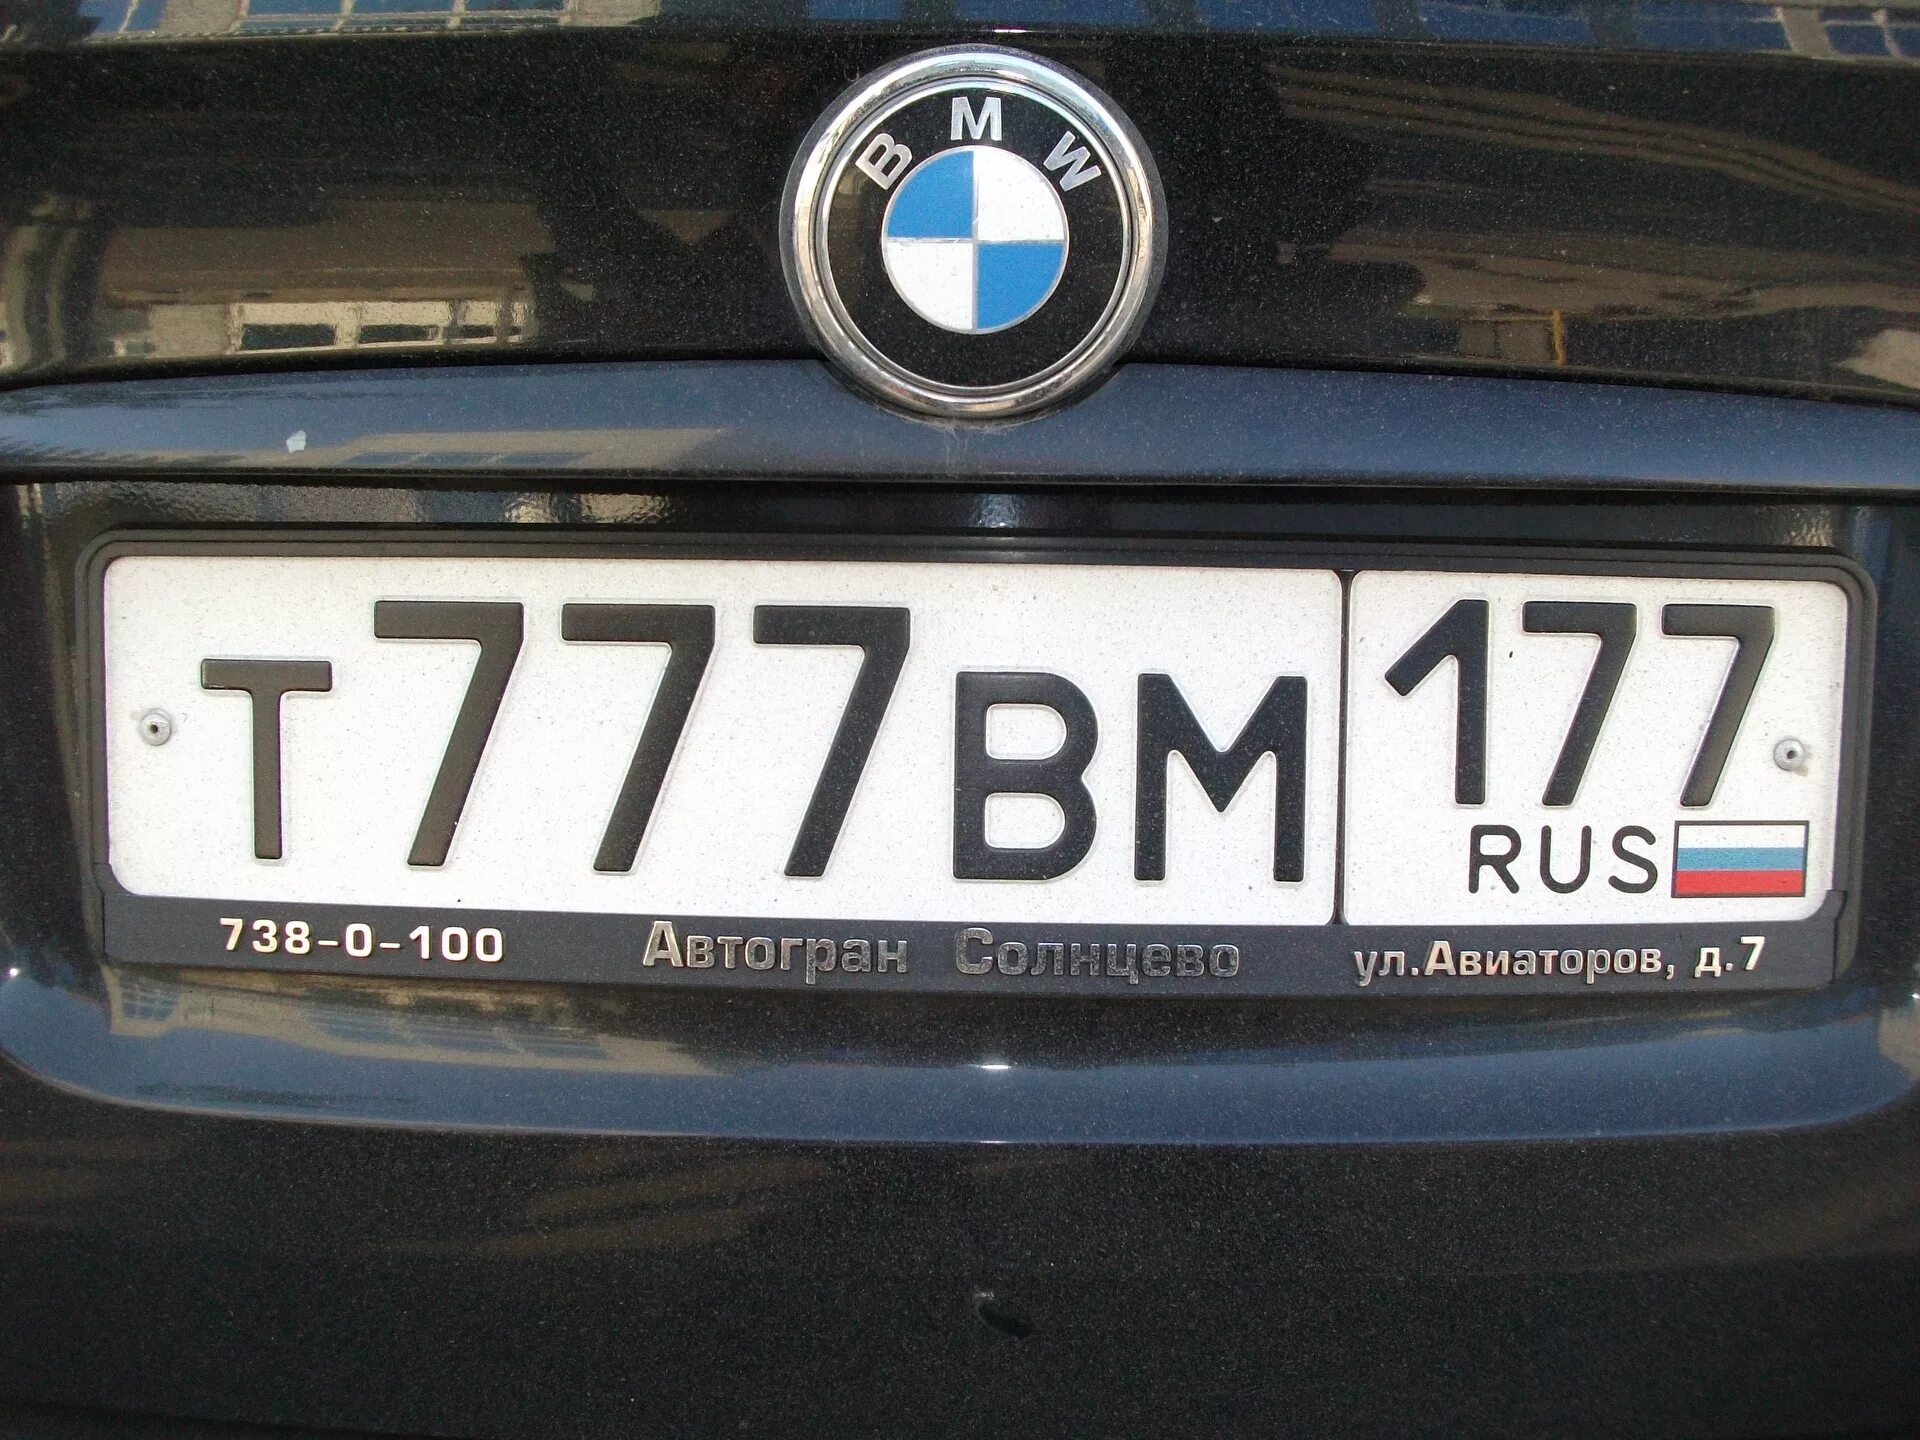 Номер убира. Номера машин. Номерной знак автомобиля. Российские номера. Российские номера машин.